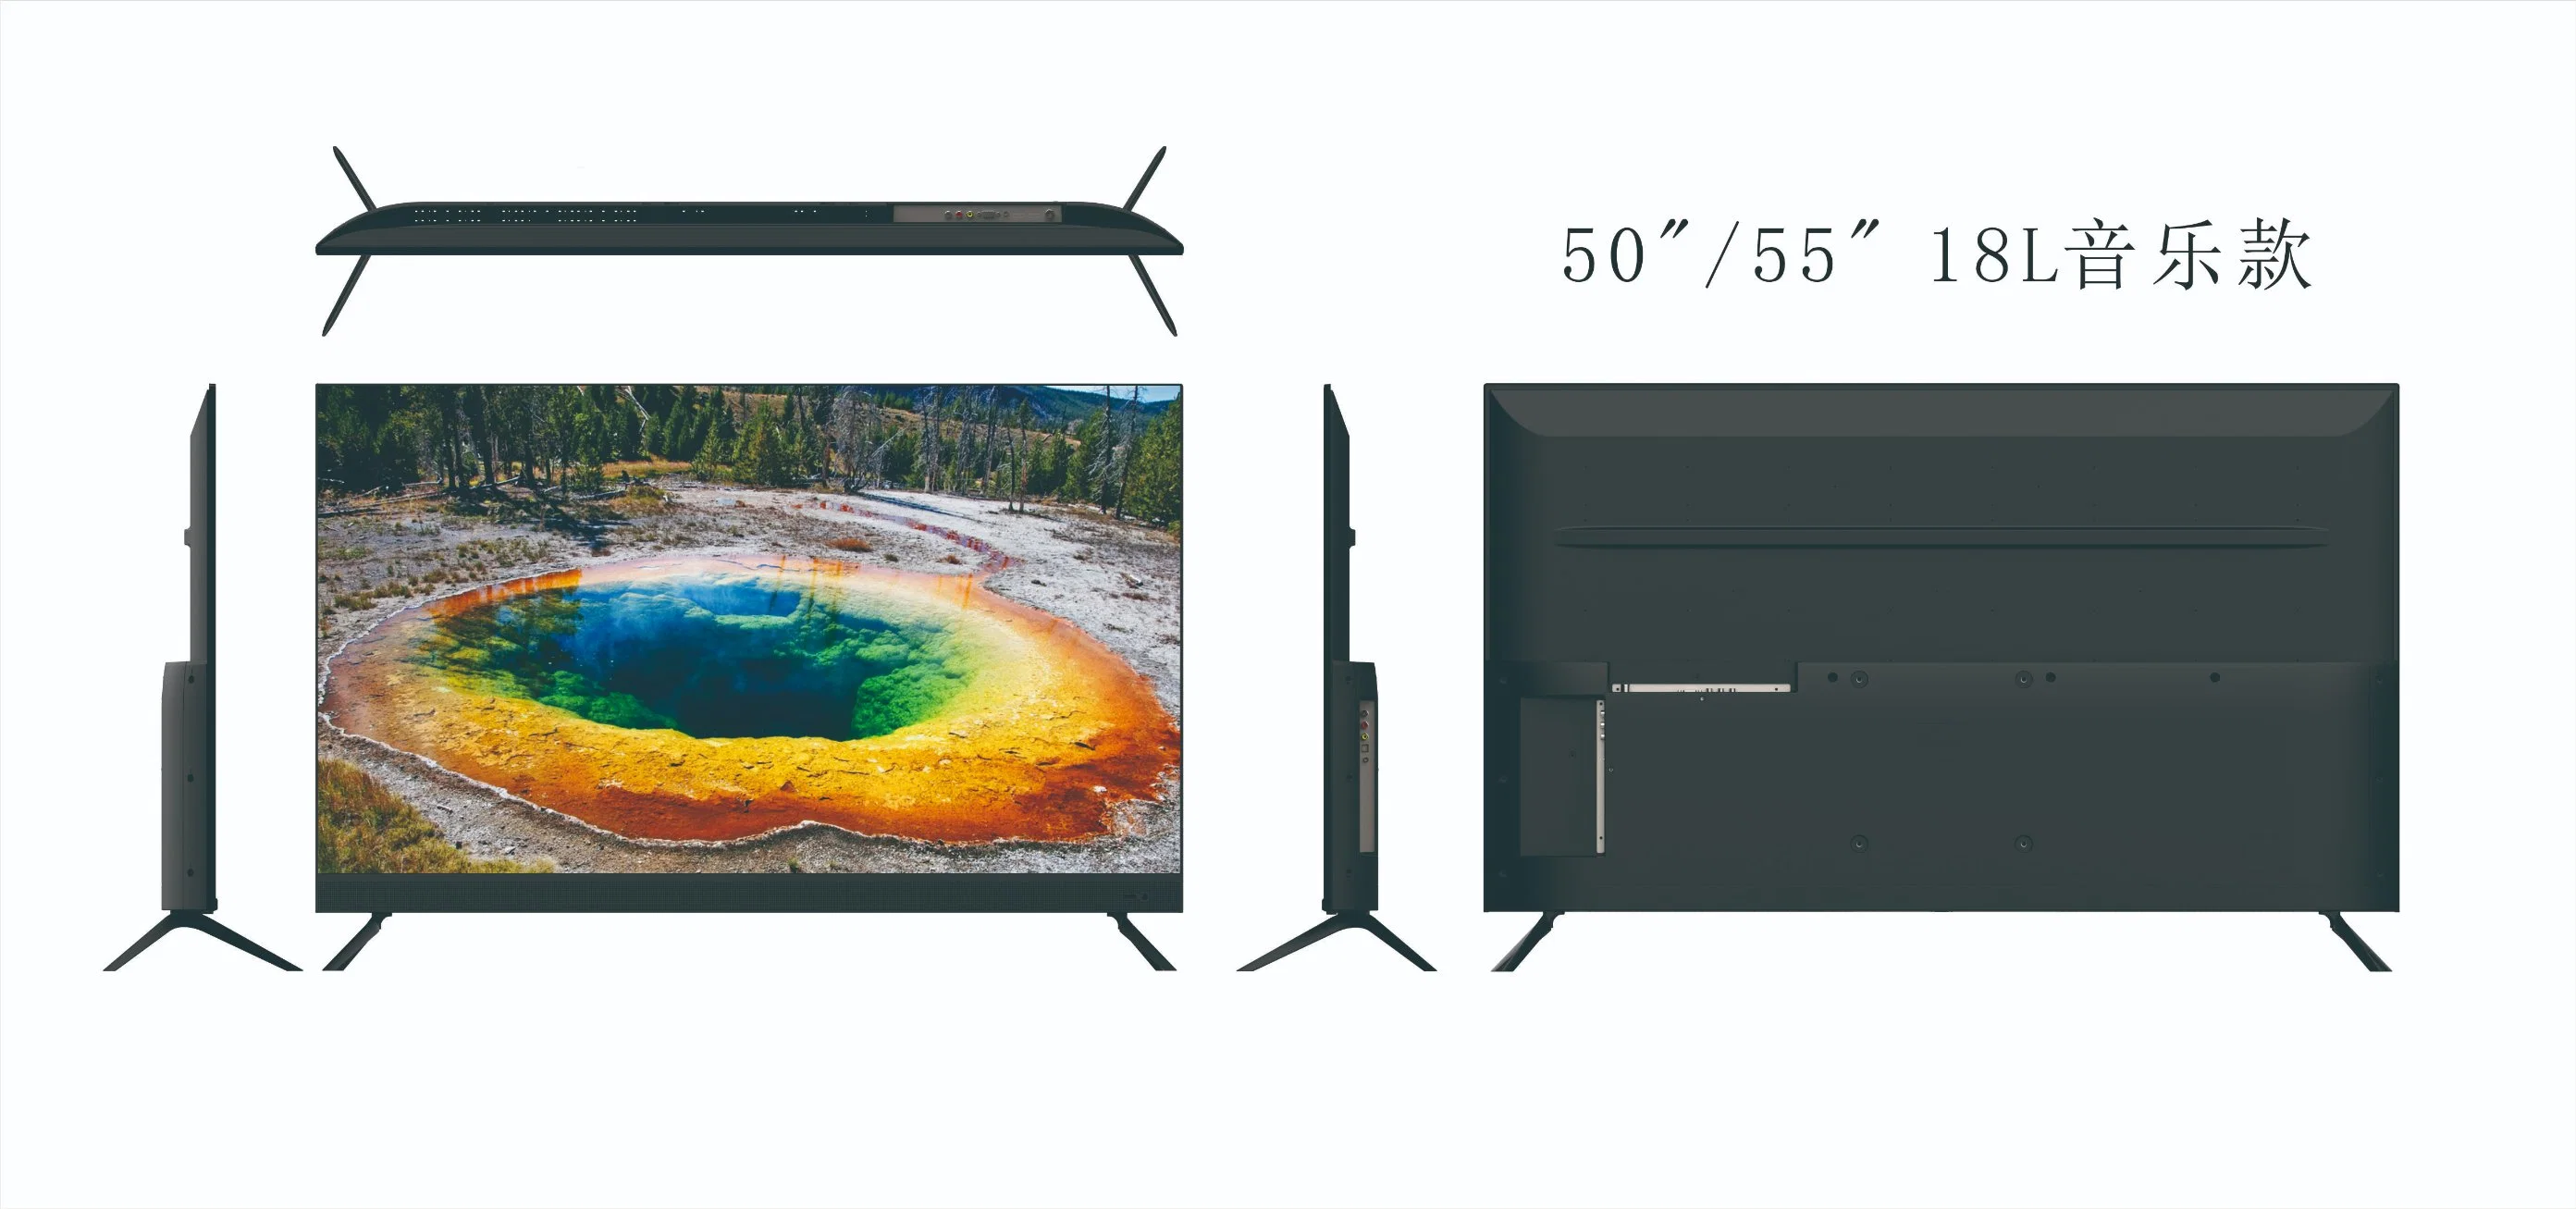 Melhor preço de fábrica 55 polegadas LCD LED TV em casa com DVB-T2 S2 Sistema Digital